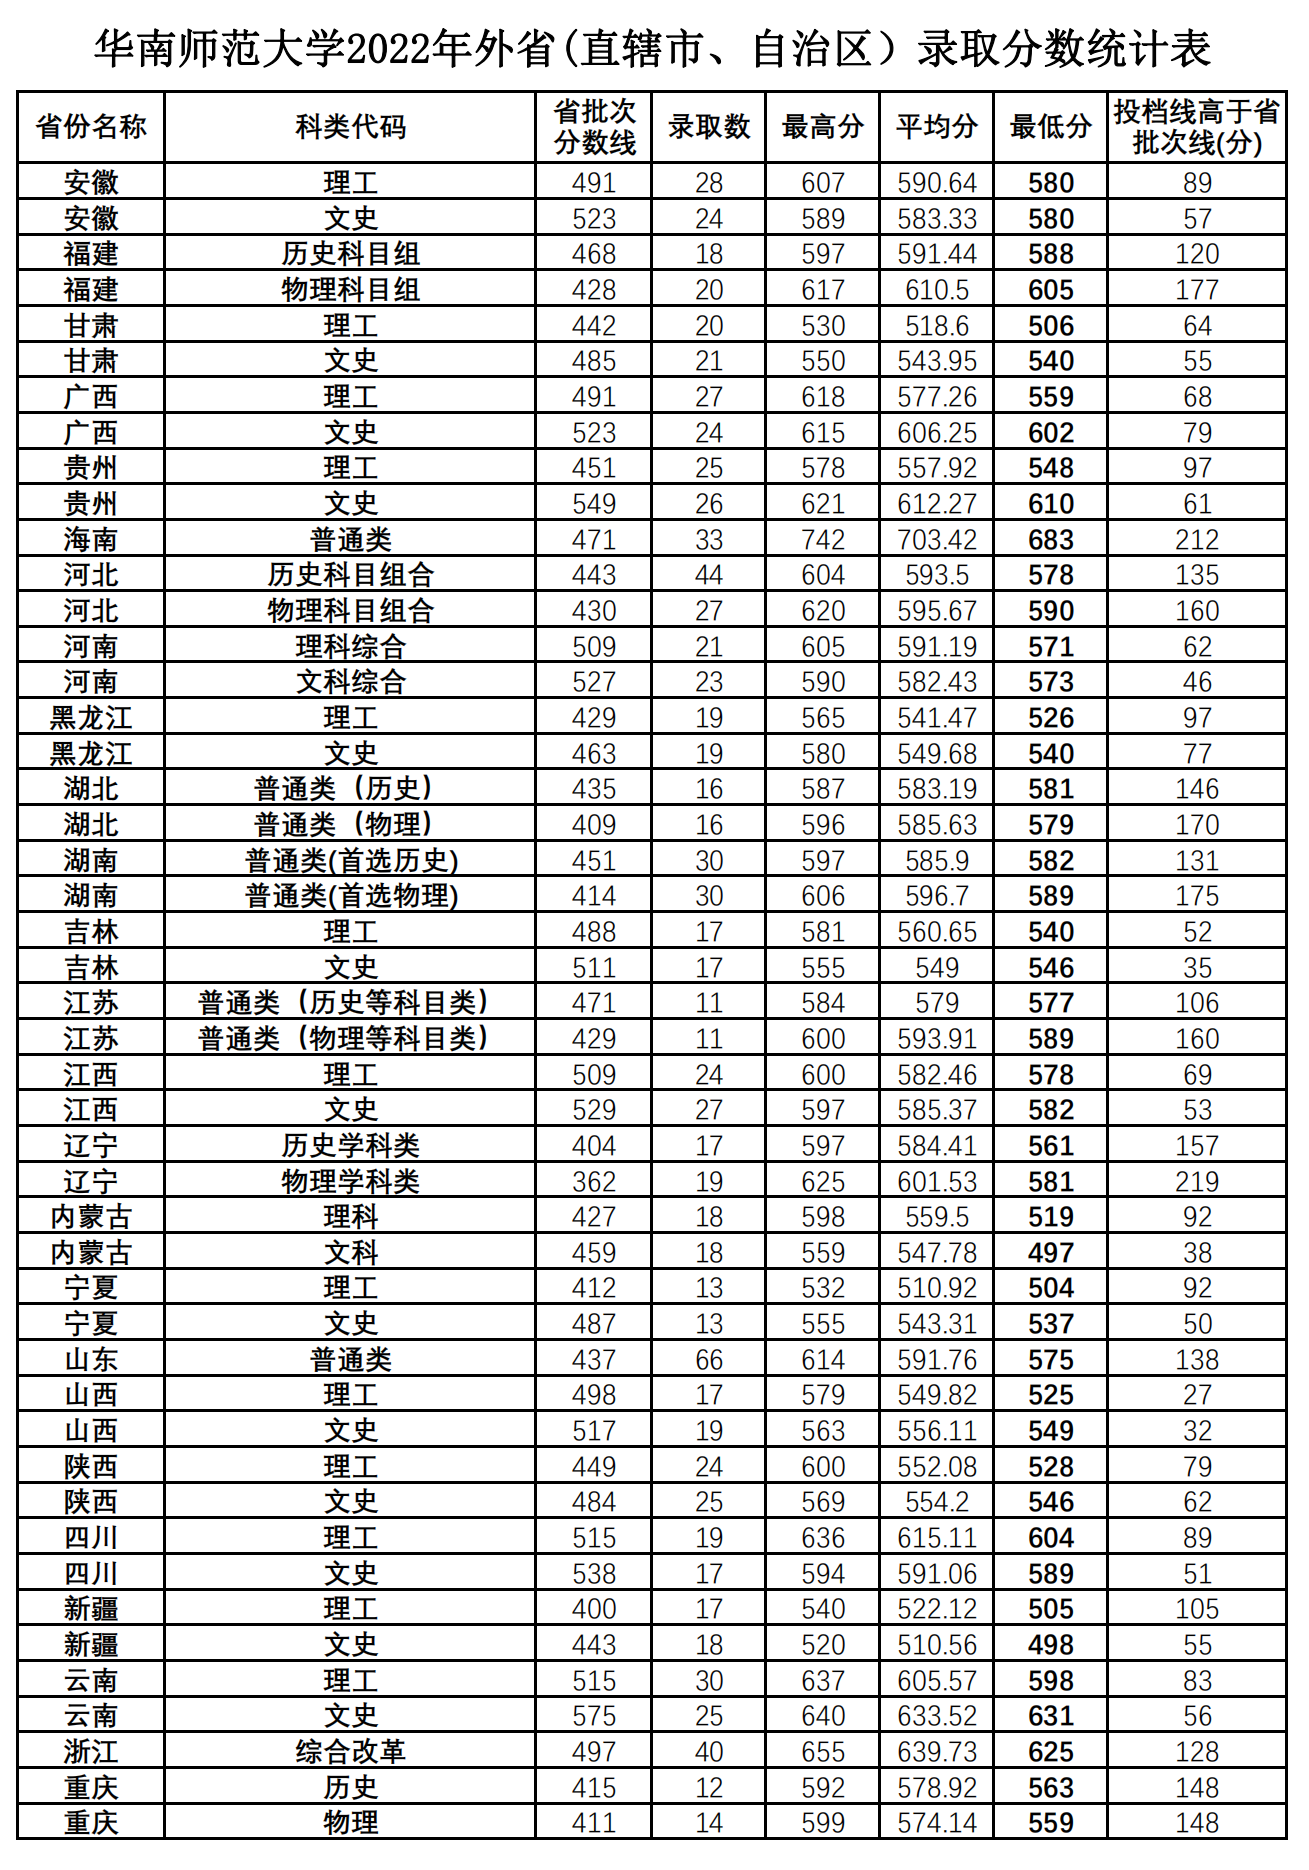 华南师范大学2022年外省(直辖市、自治区）录取分数统计表